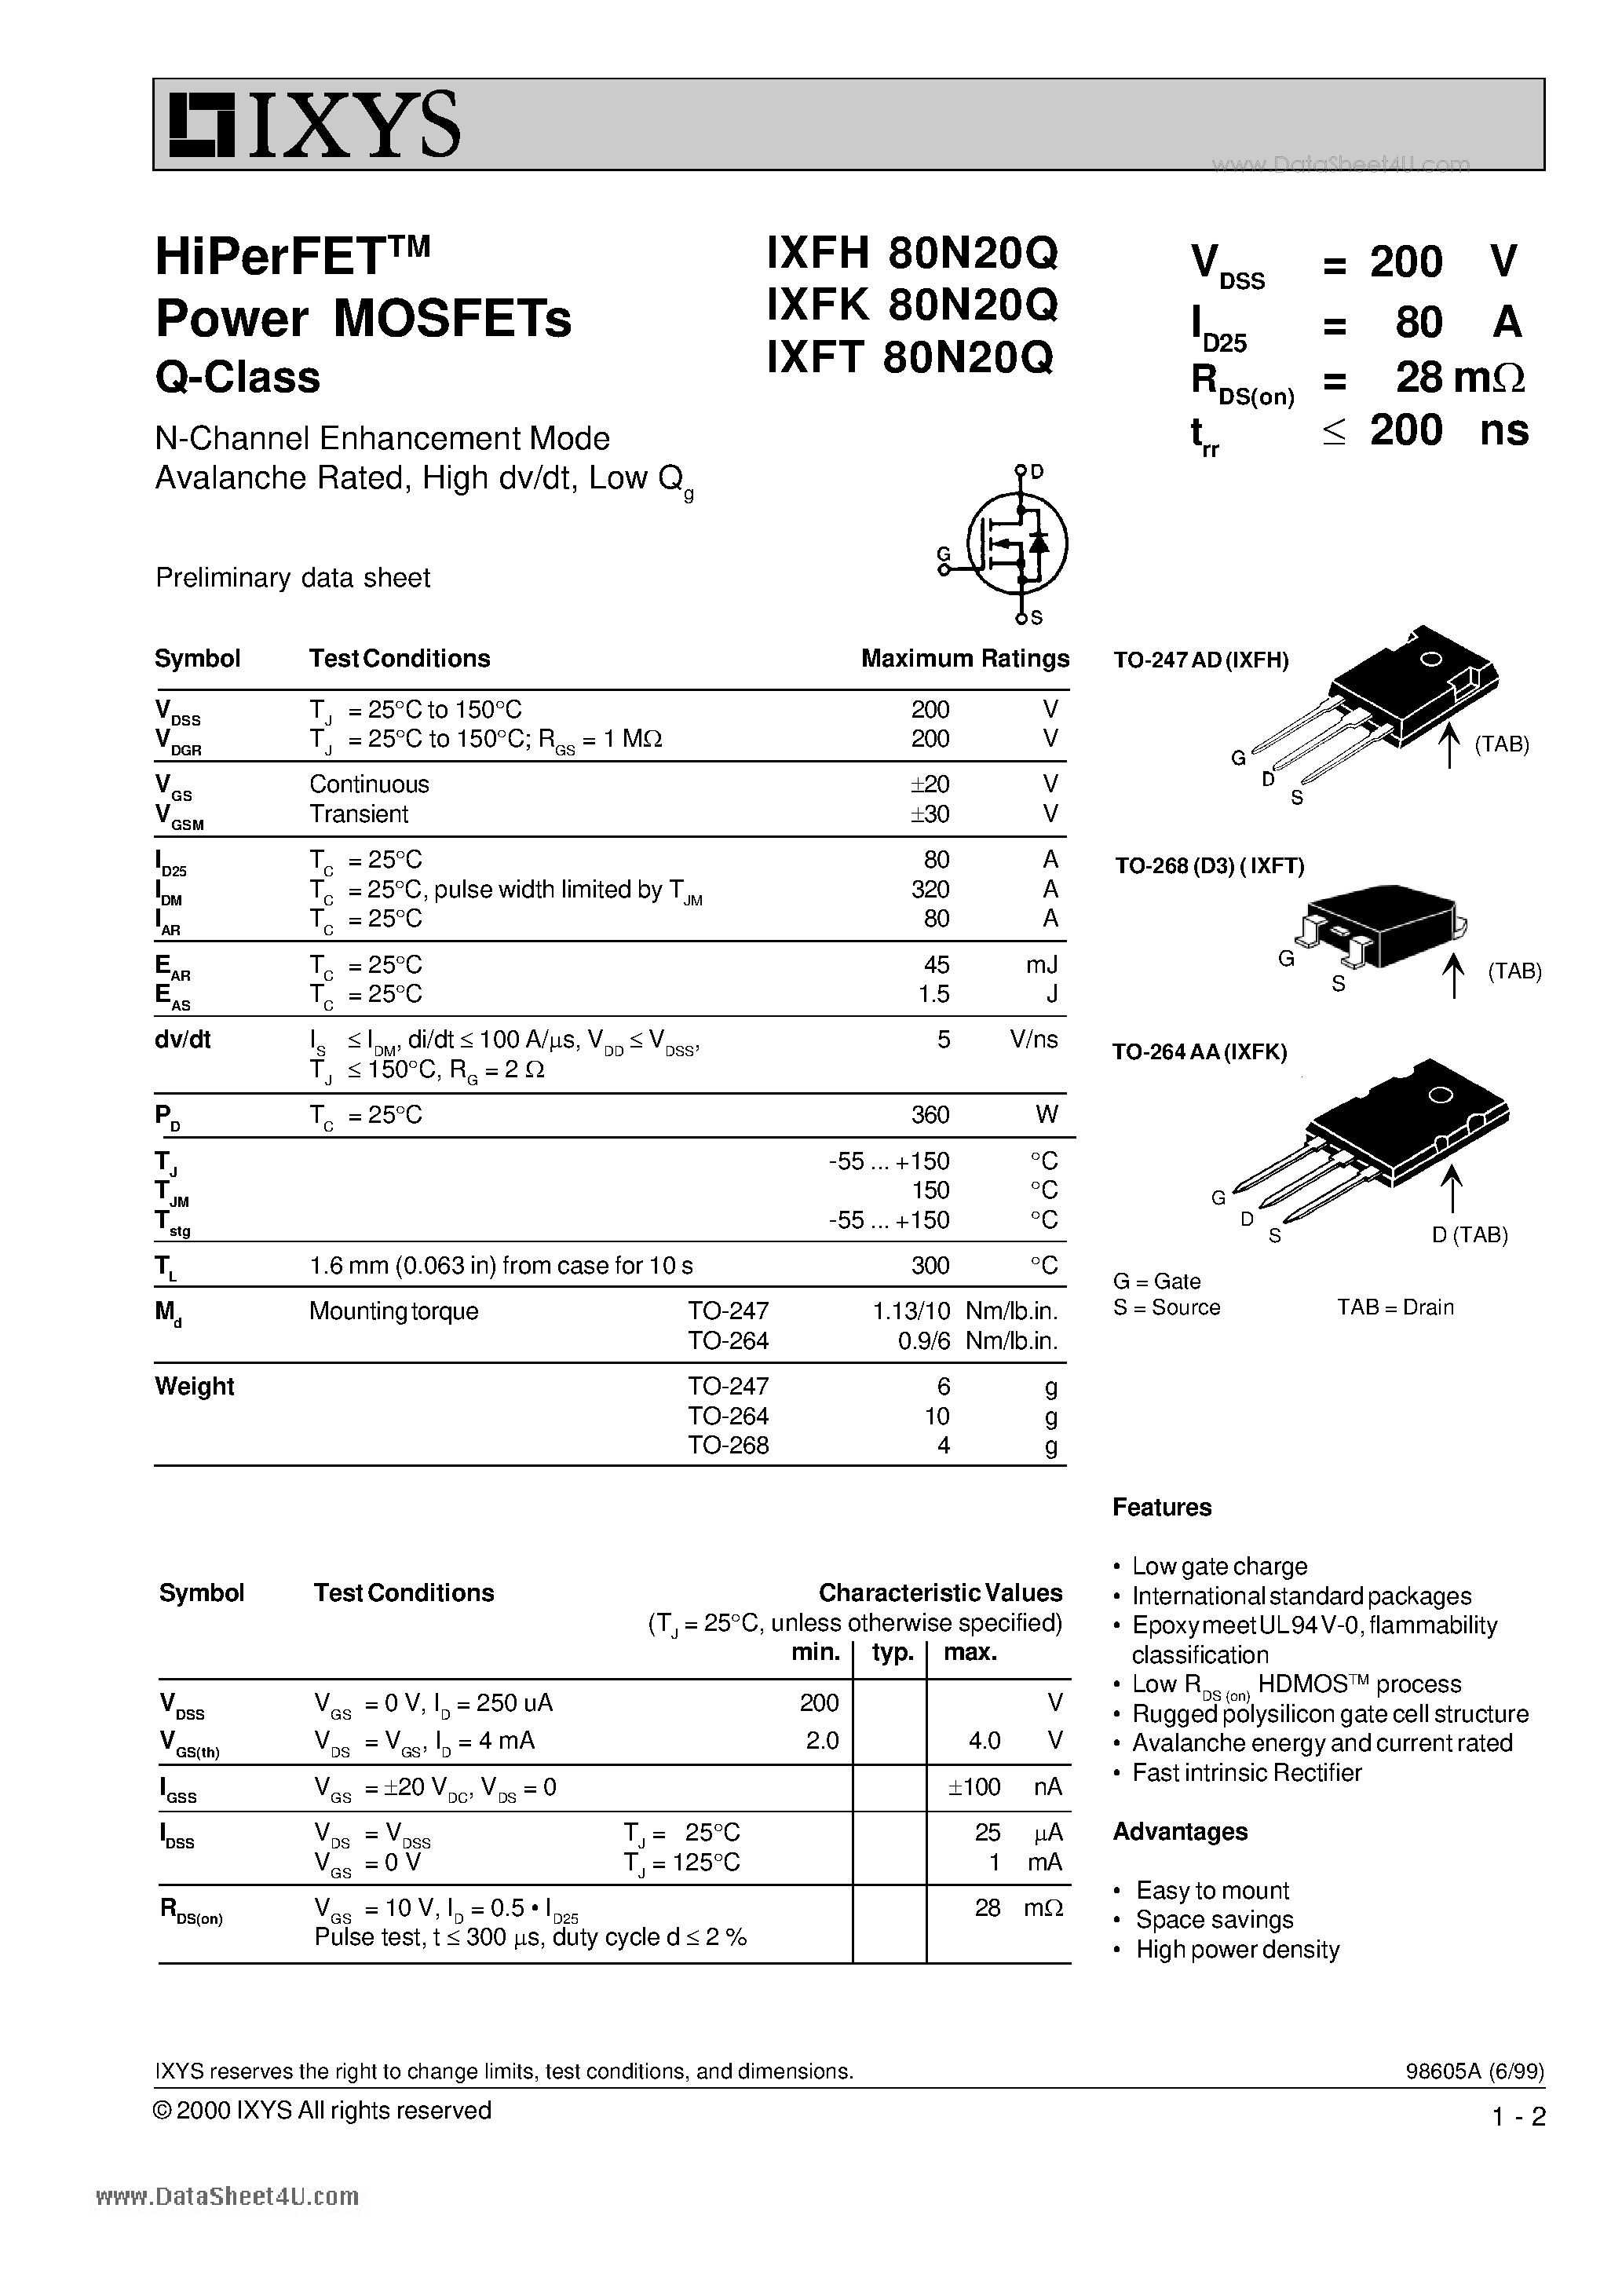 Даташит IXFH80N20Q - Power MOSFETs Q-Class страница 1